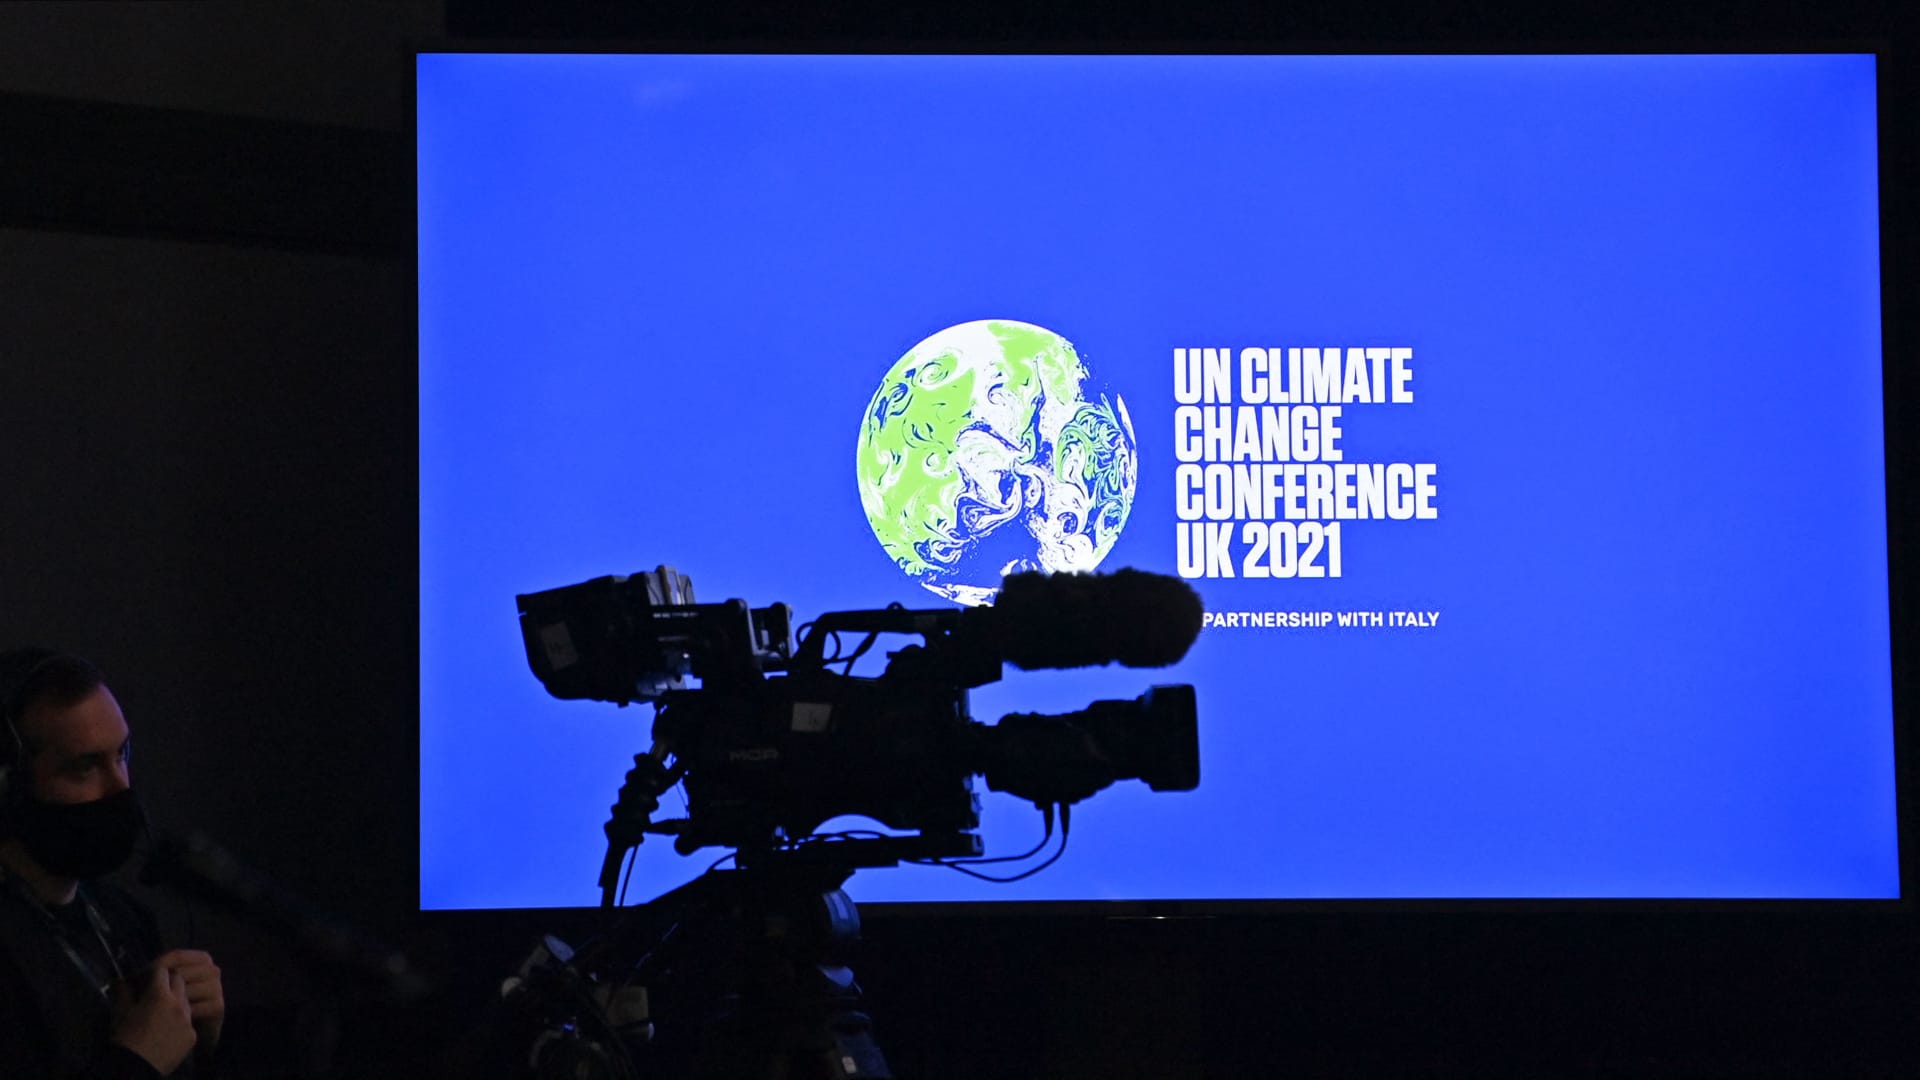 شاشة تظهر اسم مؤتمر غلاسكو التابع للأمم المتحدة عن التغير المناخي 